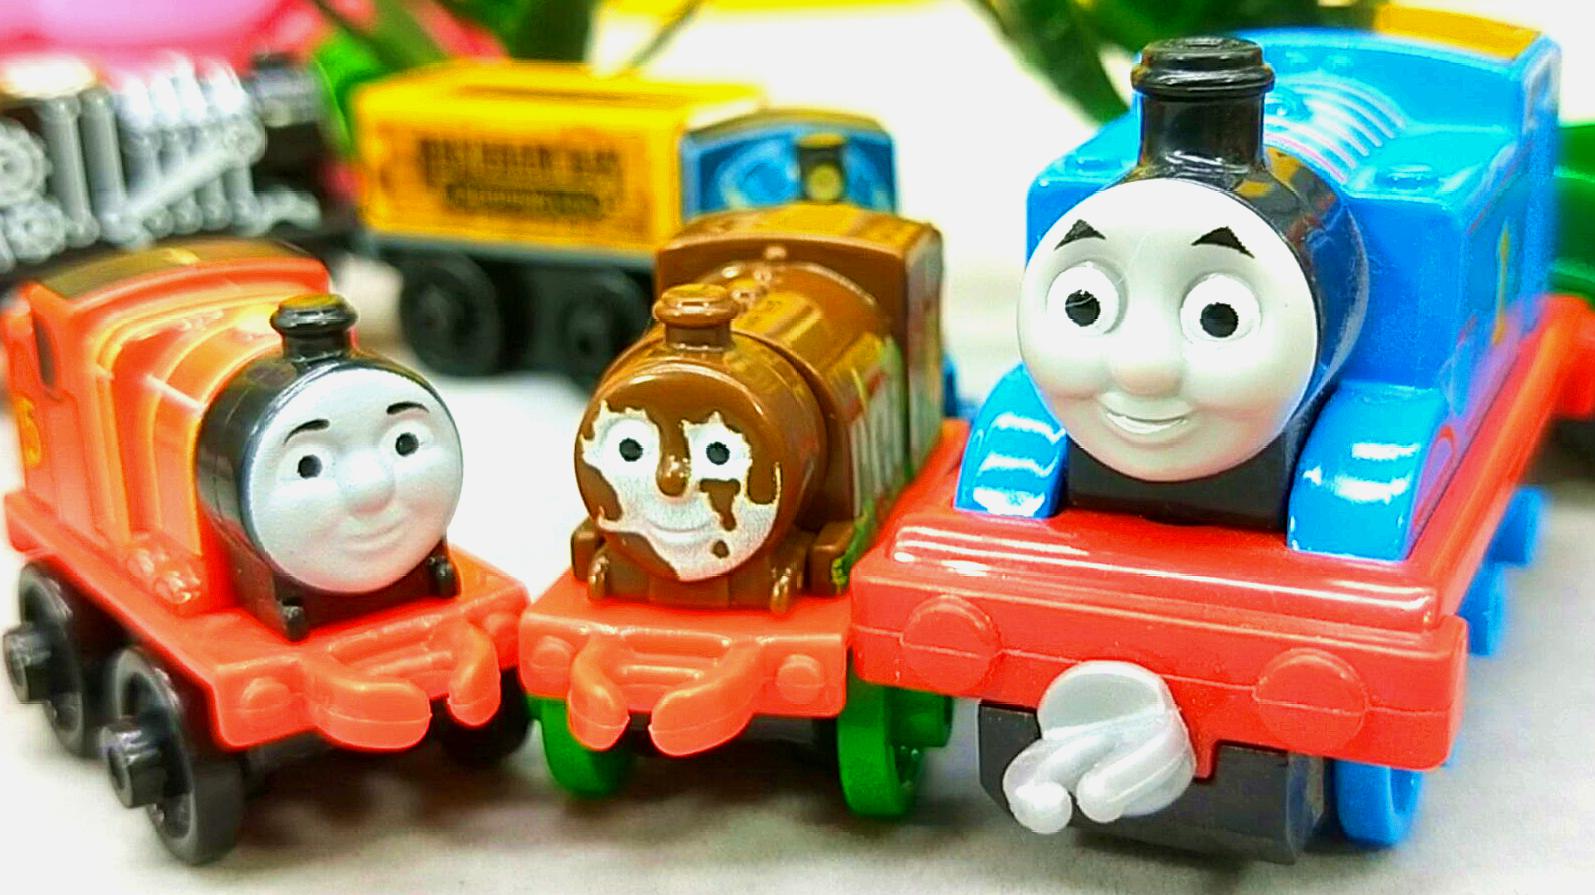 托马斯和培西比赛赢盲袋 分享迷你小火车玩具